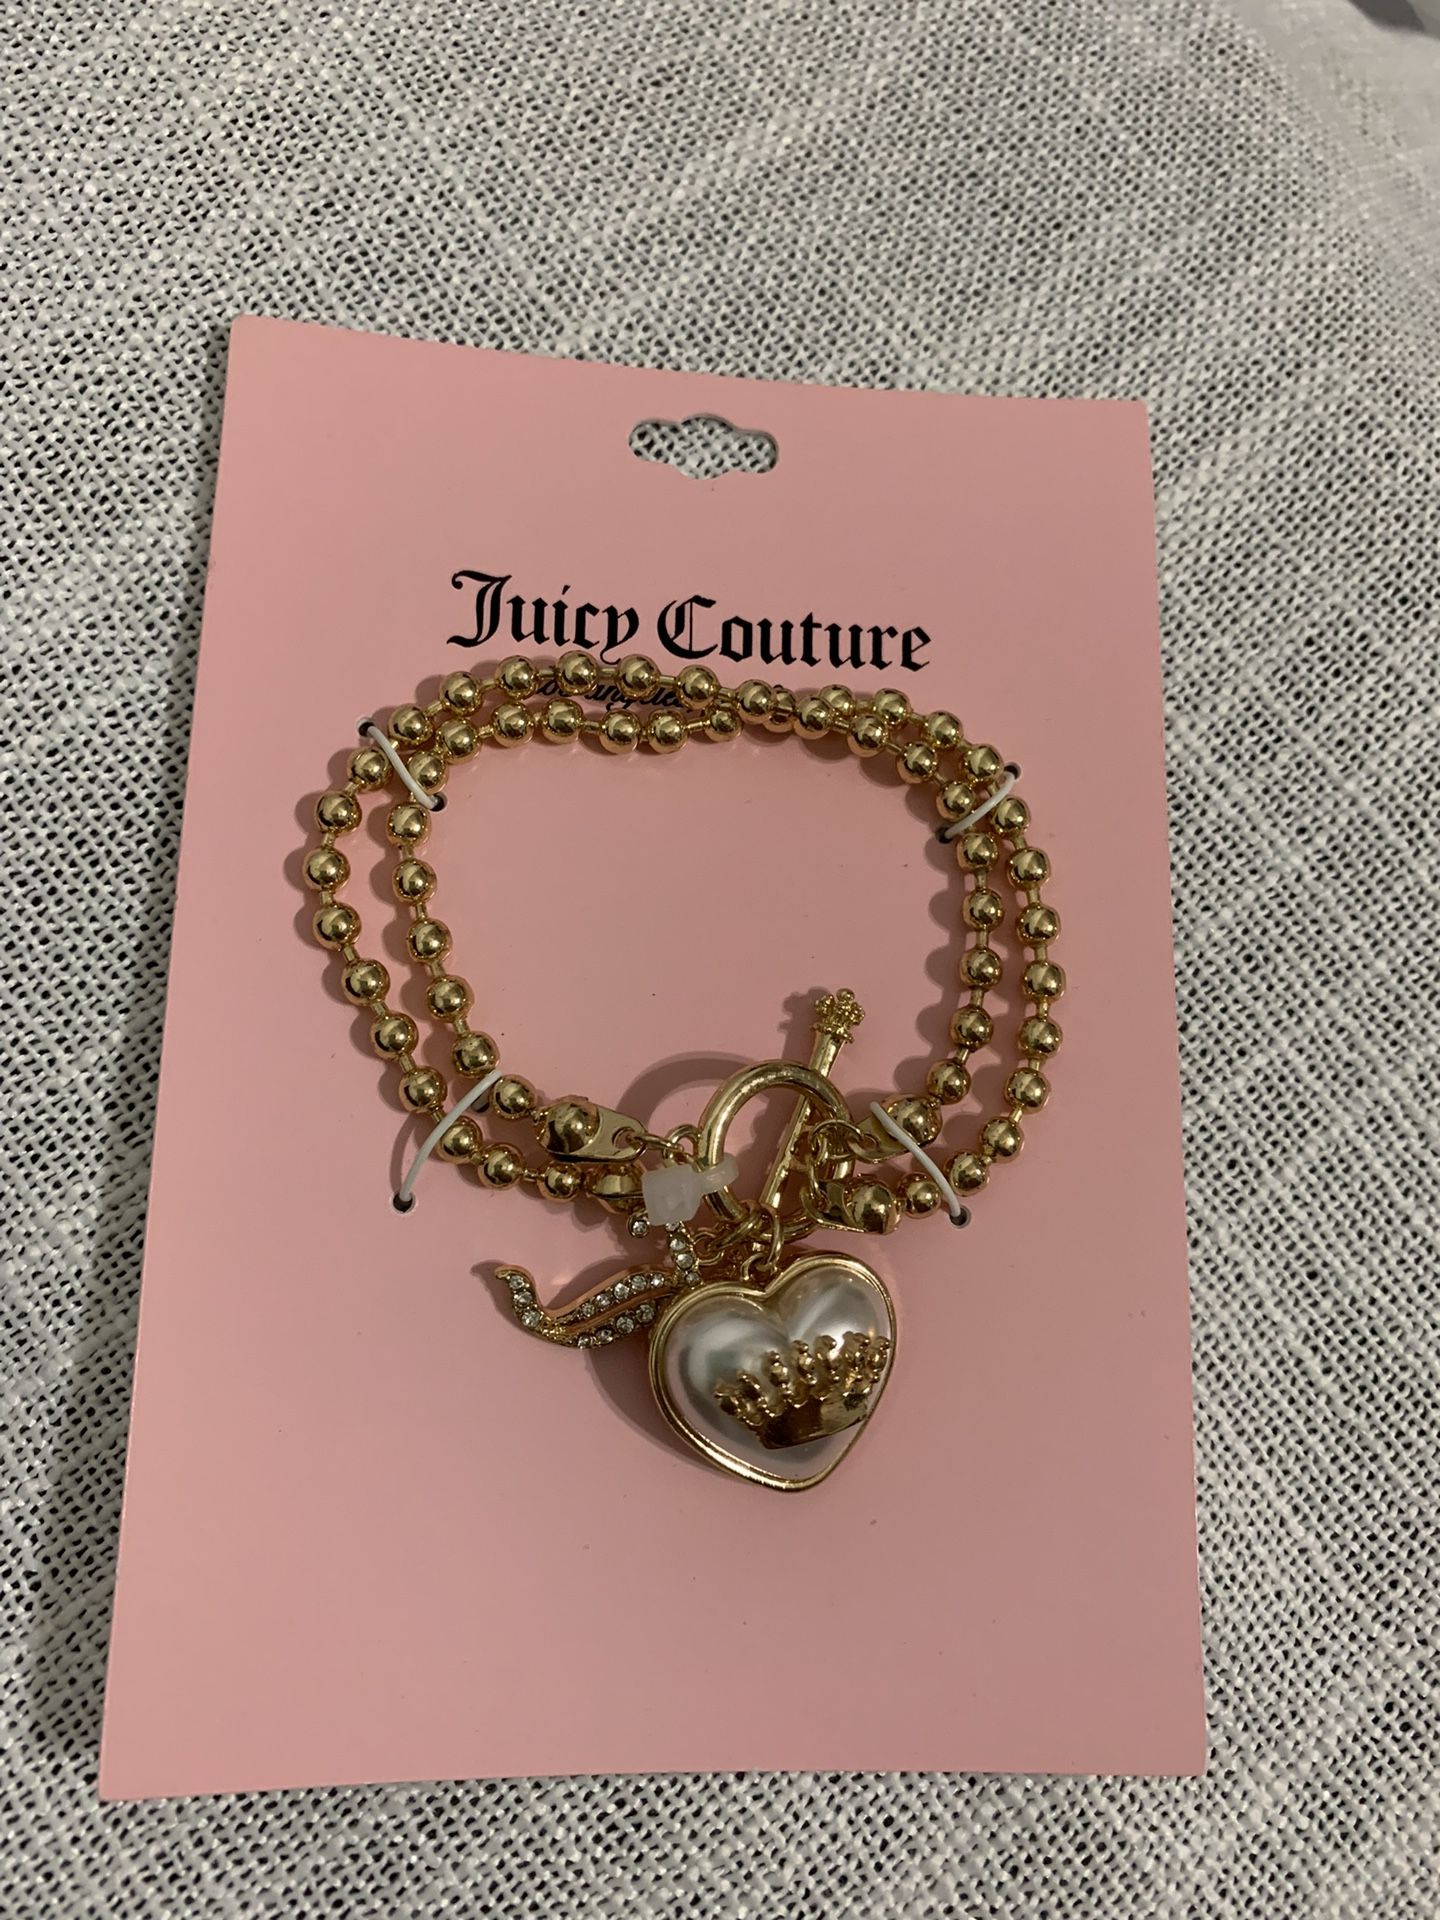 Juicy Couture Heart Charm Bracelet 